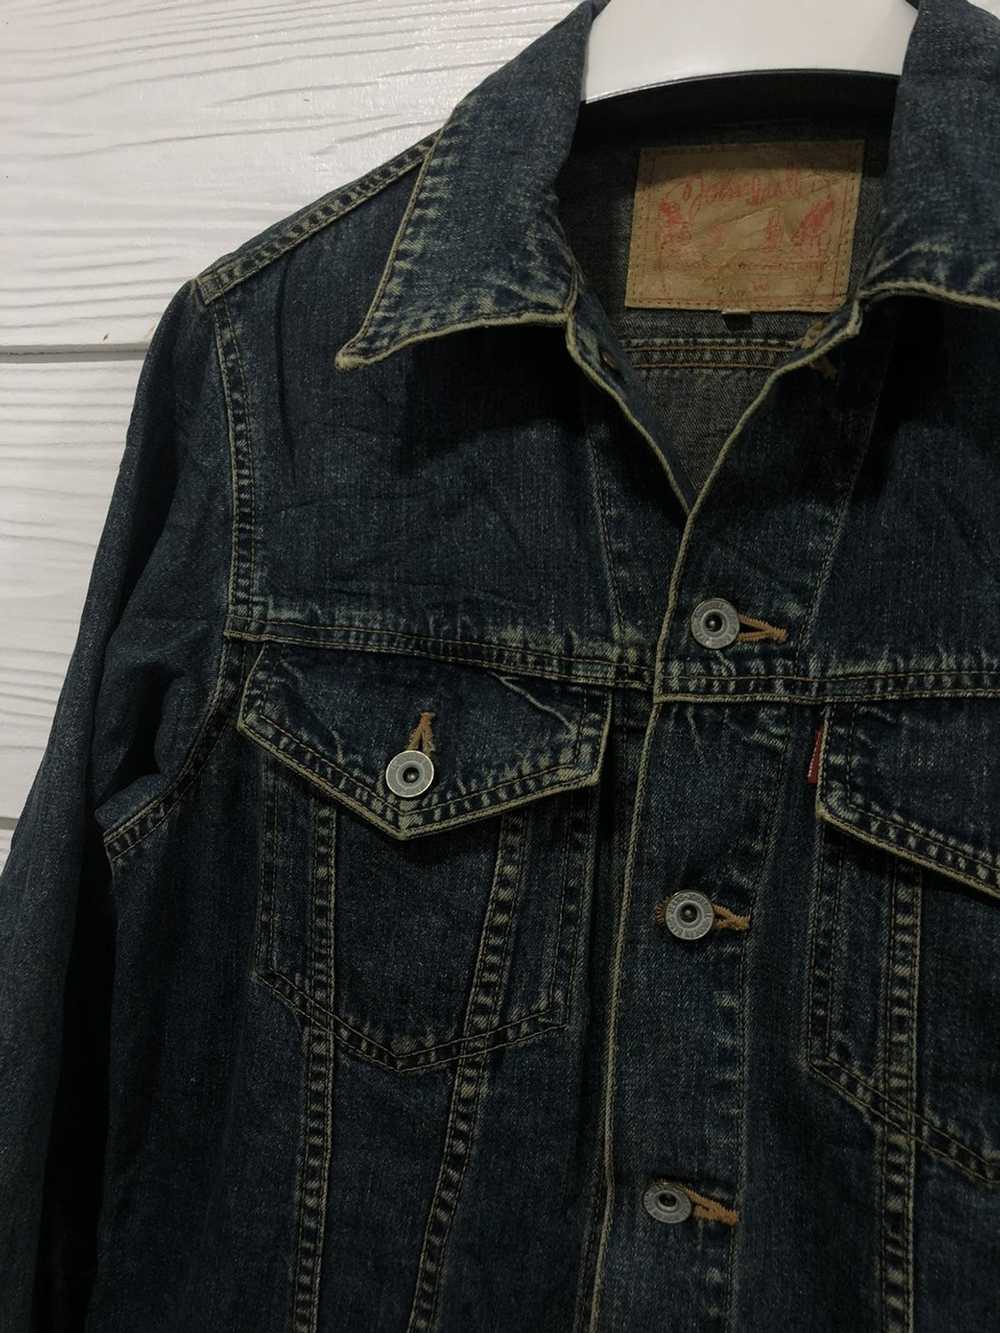 Denim Jacket × John Bull John Bull denim jacket - image 2